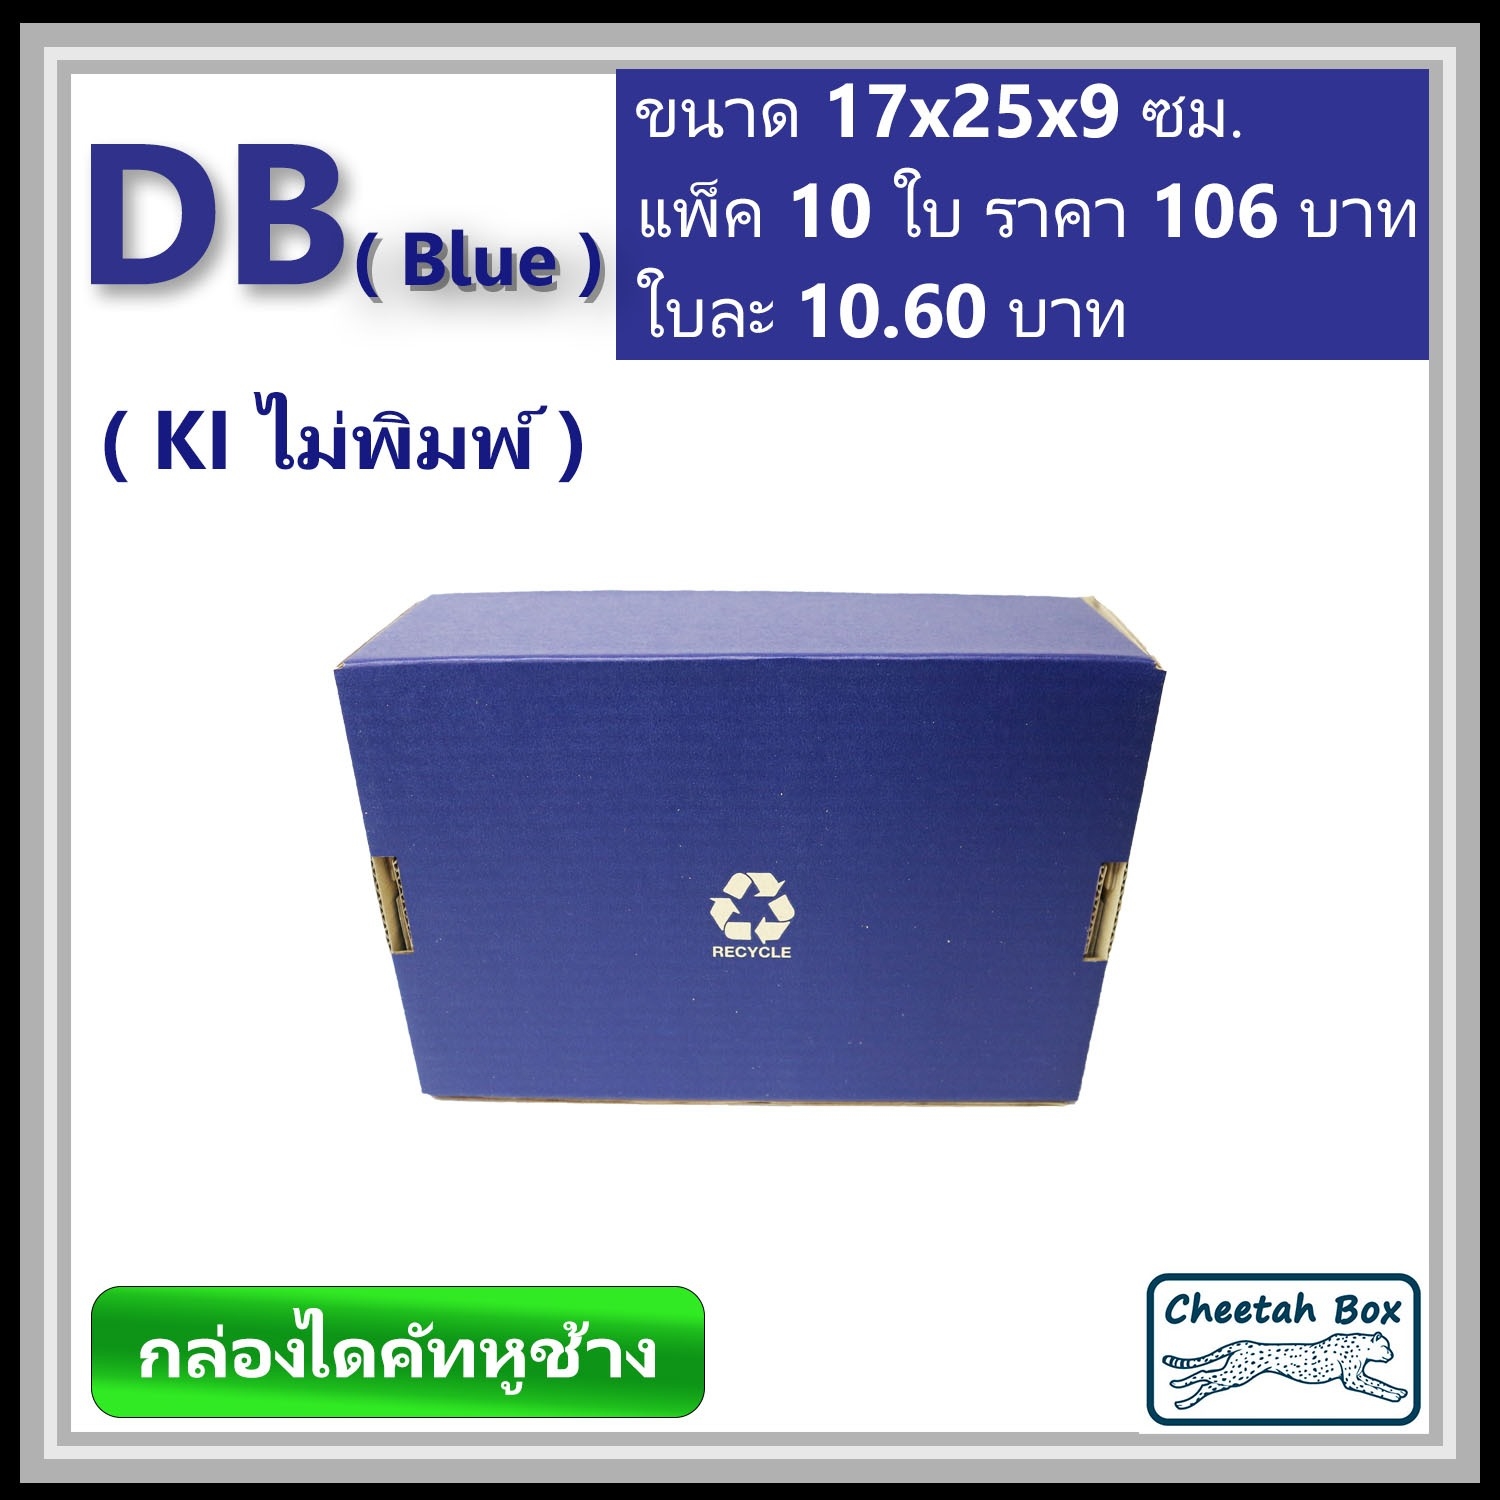 กล่องไดคัทหูช้างขนาด B รหัส DB พิมพ์สีน้ำเงินด้านนอก (Cheetah Box) 17W x 25L x 9H cm.